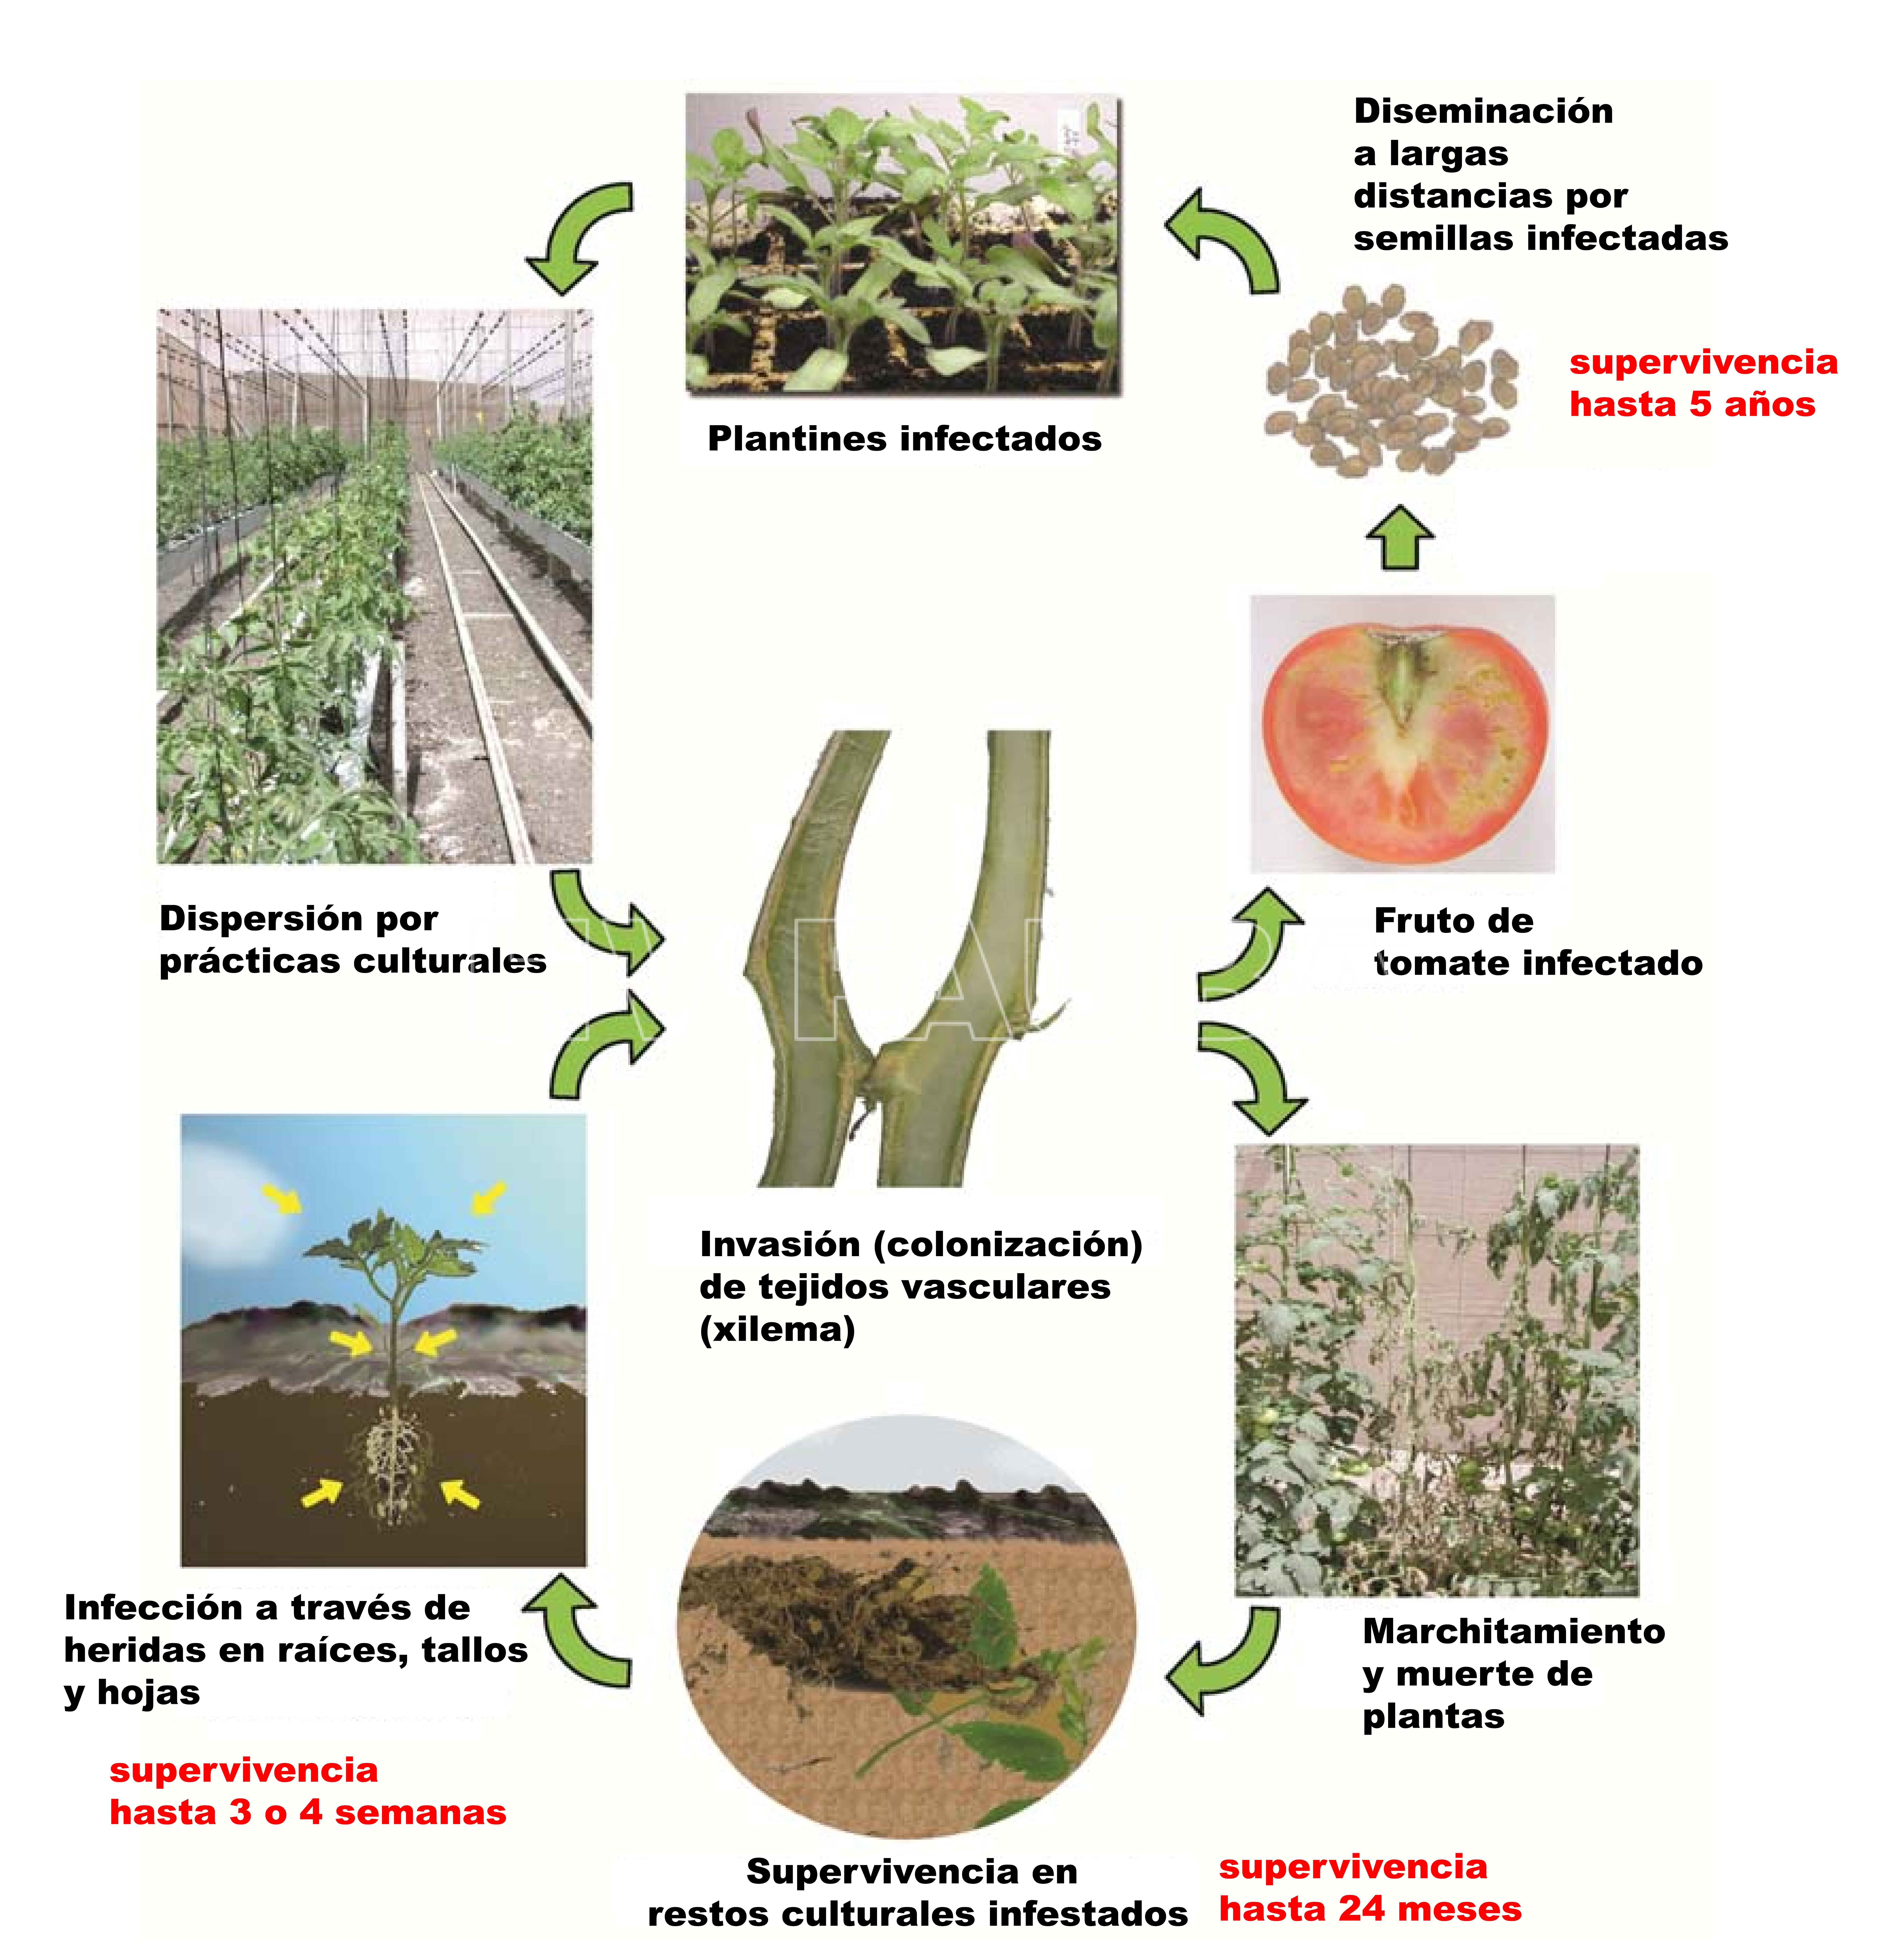 Ciclo del cancro bacteriano del tomate, causado por Clavibacter michiganensis subsp. michiganensis, Autor: de León et al., 2011.